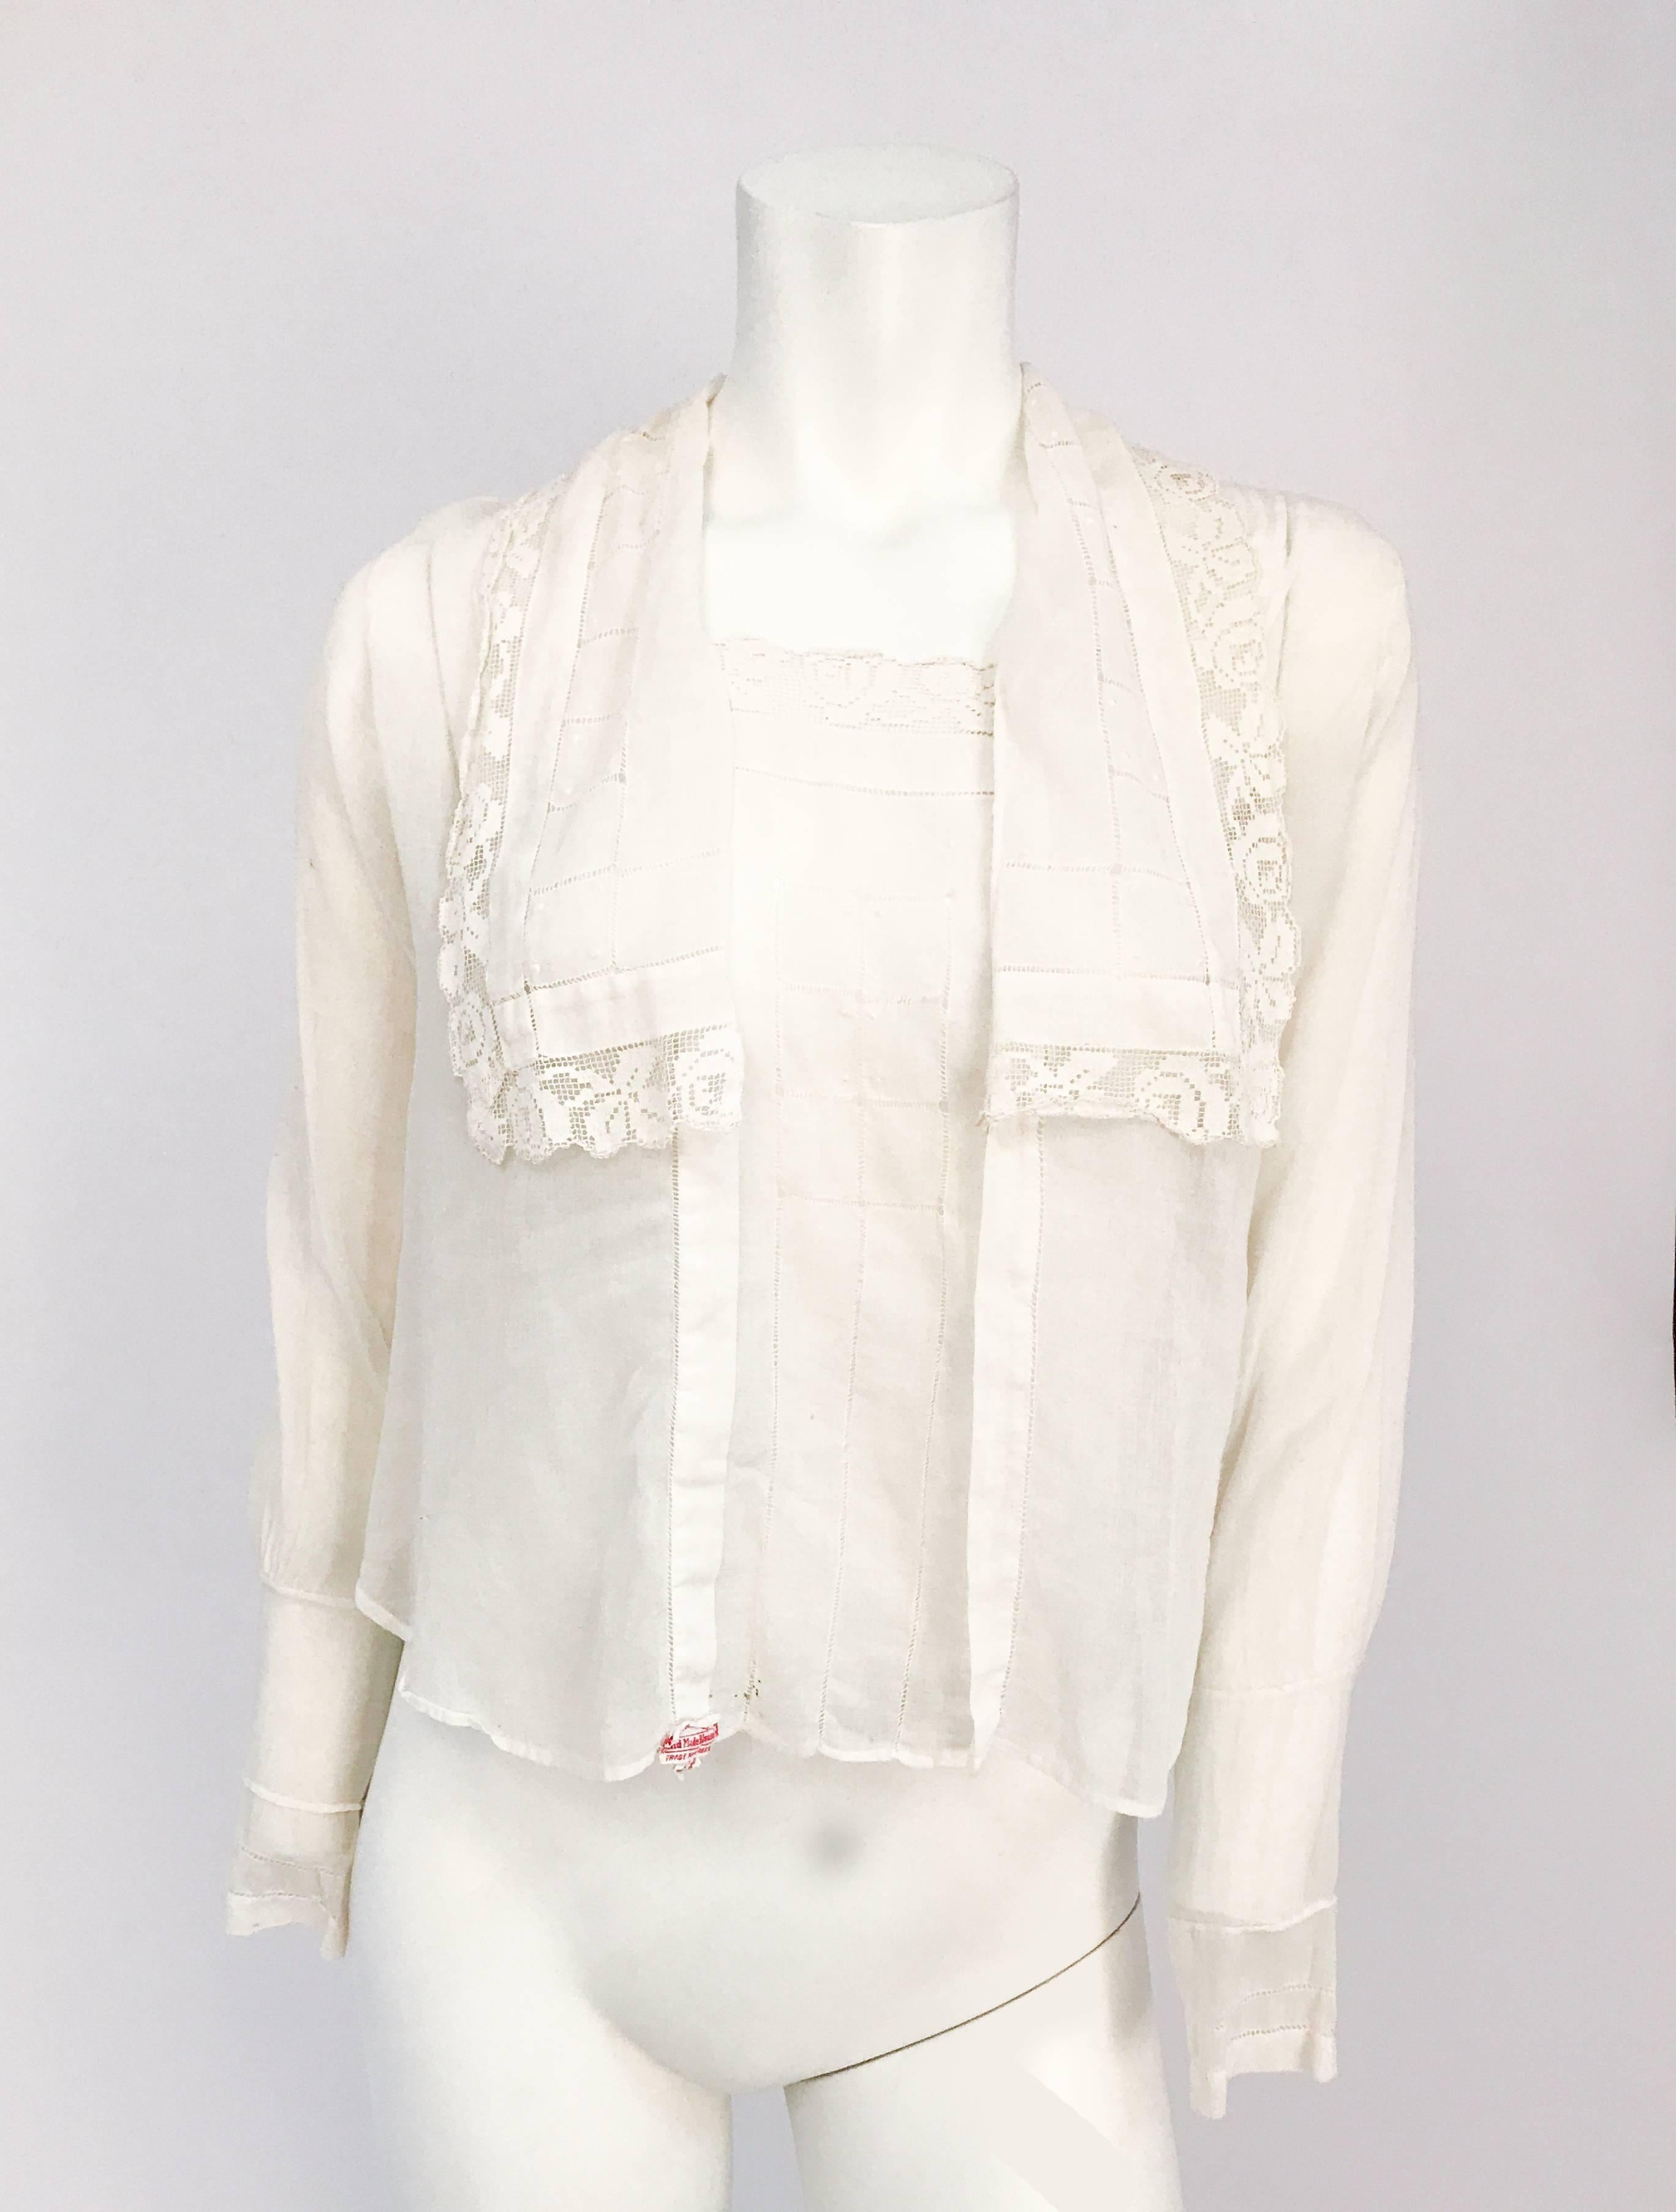 Weiße Bluse aus den späten 1910er Jahren mit Spitzen- und Zugarbeiten. Handgefertigte Bluse mit Durchzug, französischem Knoten und passendem Spitzenbesatz. Übergroßer Kragen mit Muschelknöpfen und Haken- und Ösenverschlüssen.